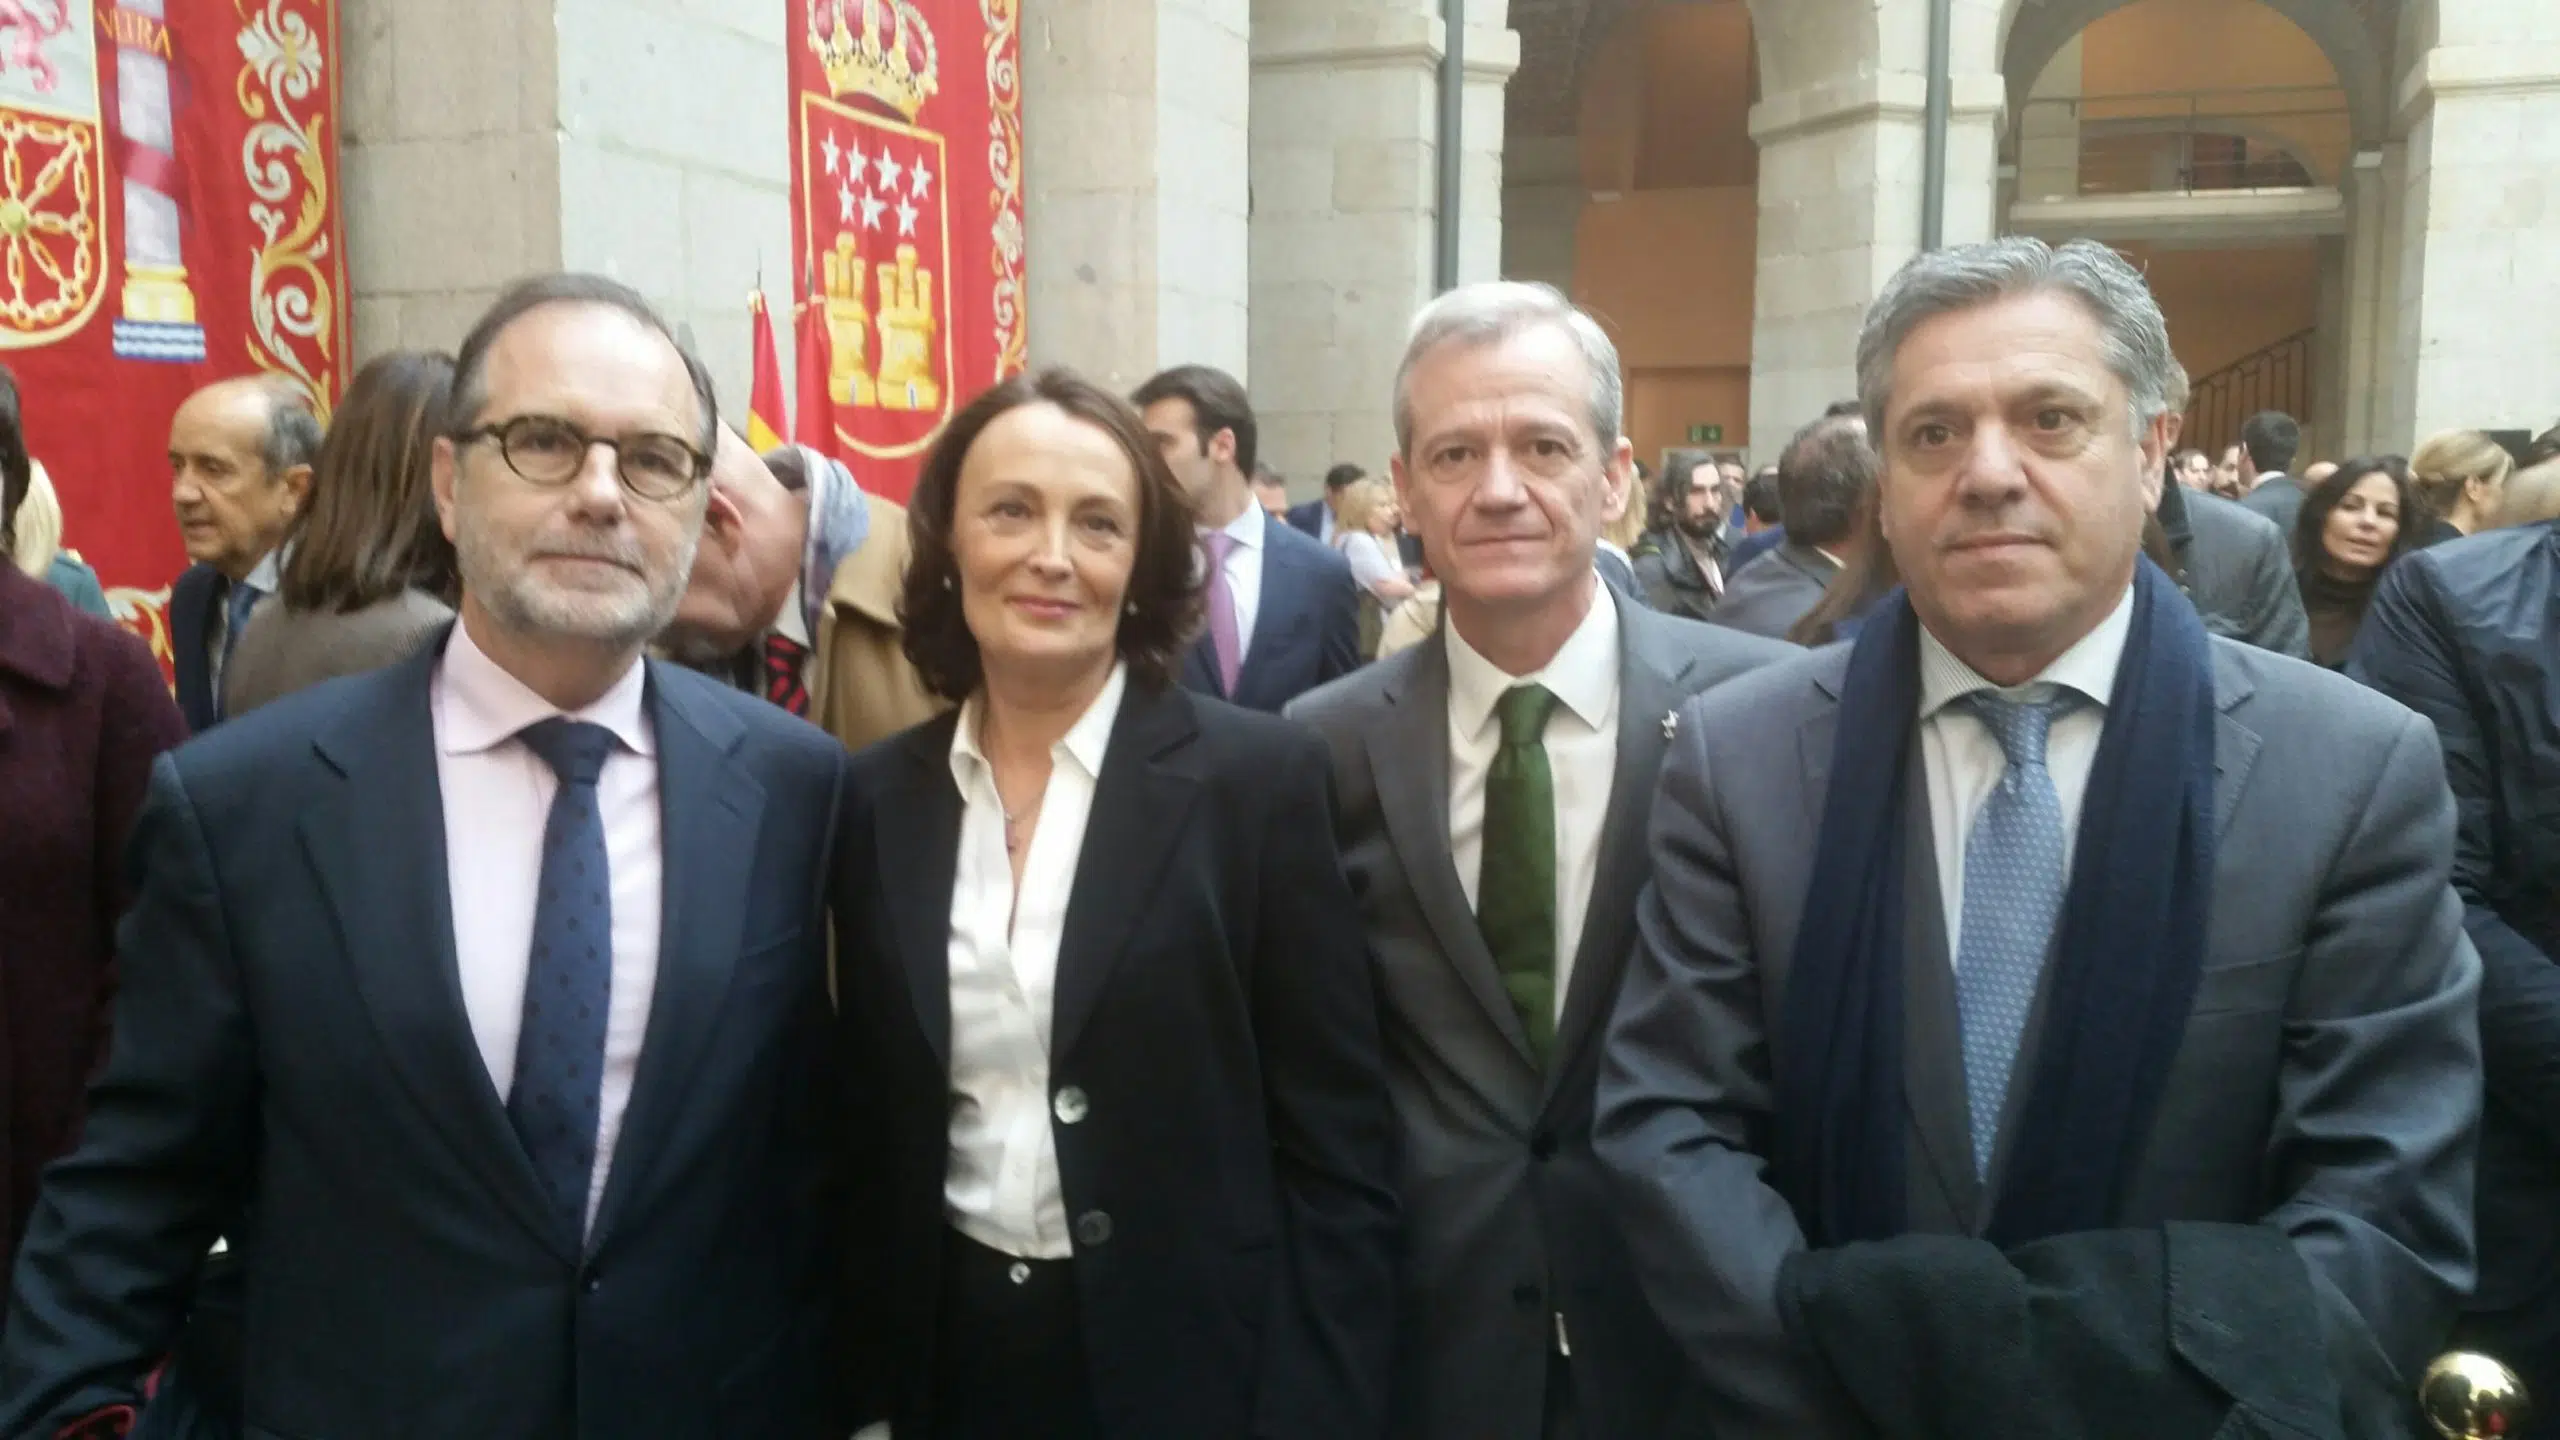 Yolanda Ibarrola toma posesión como directora general de Justicia de Madrid